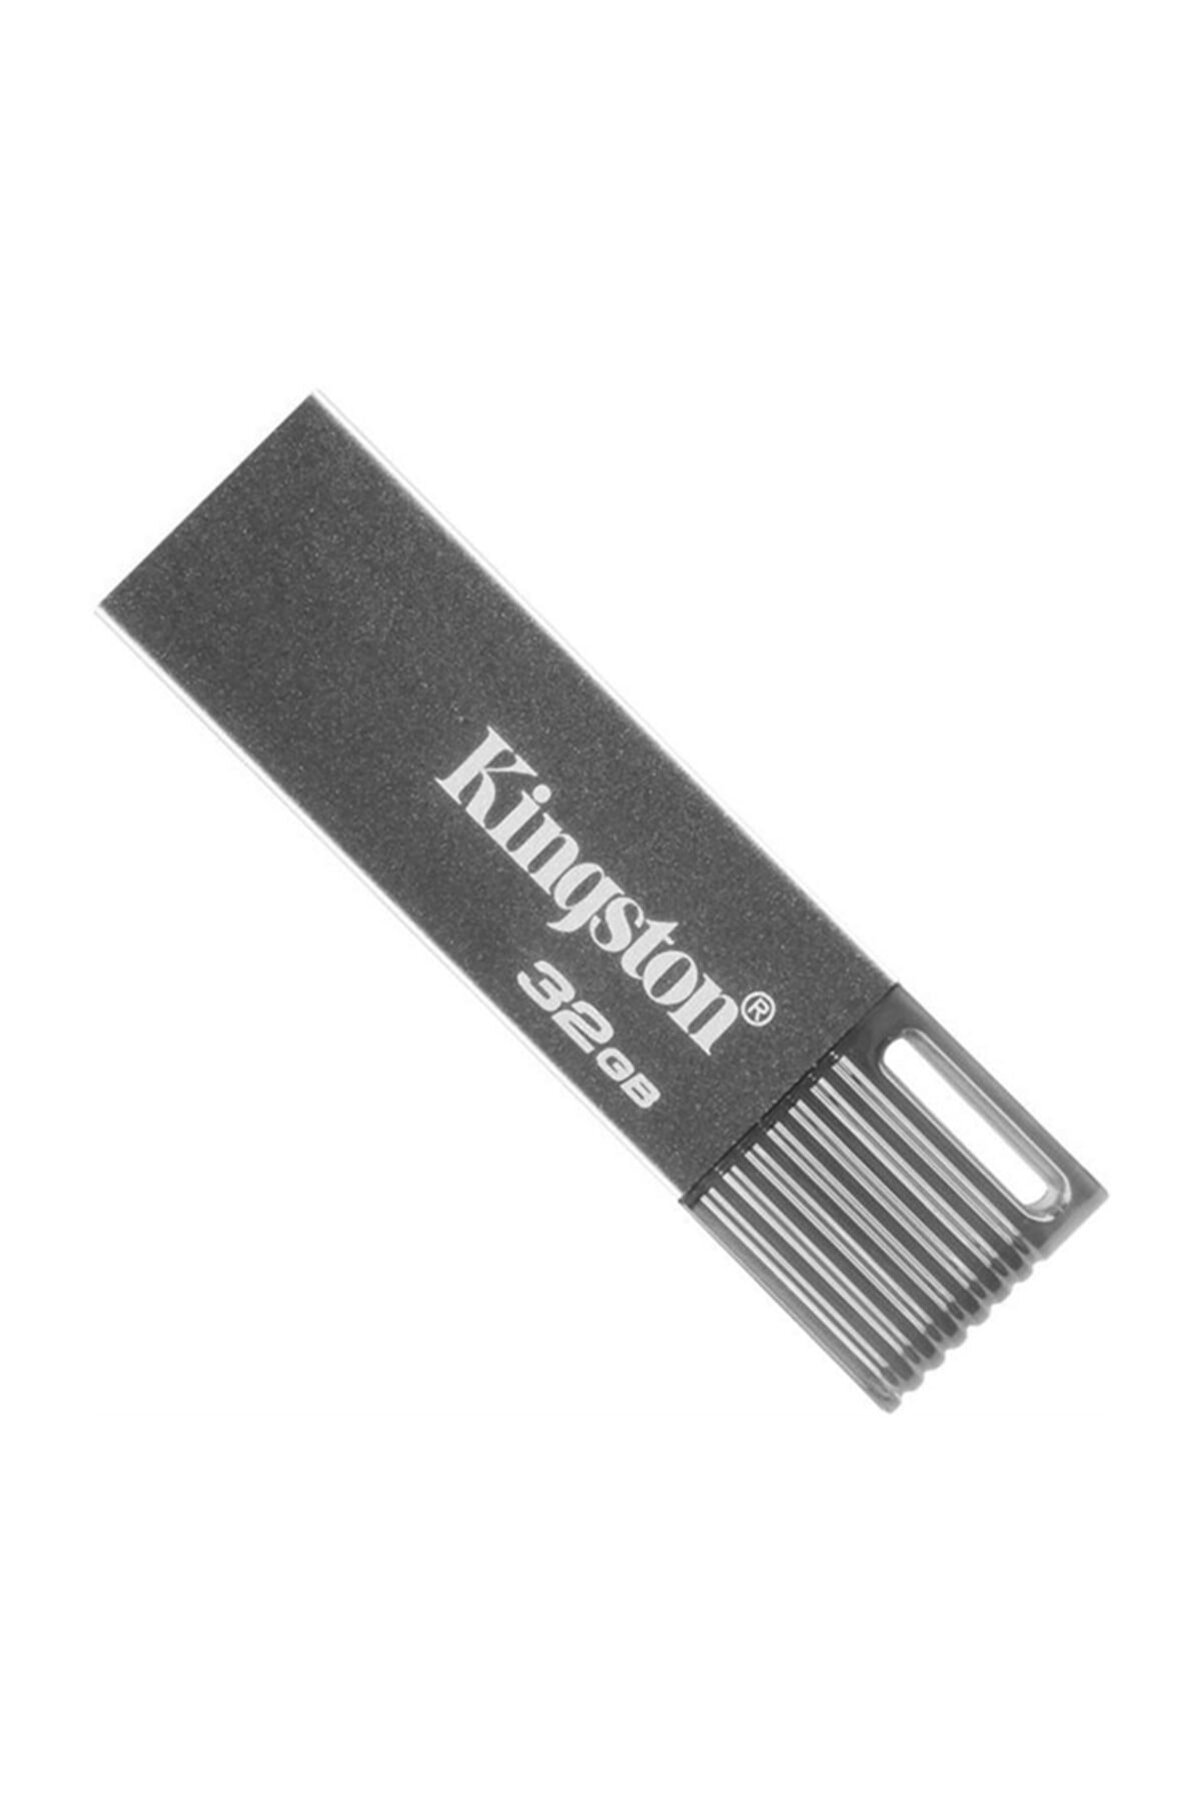 Kingstone 32gb Usb 3.0 Flash Sürücü - Dtm7 / 32gb